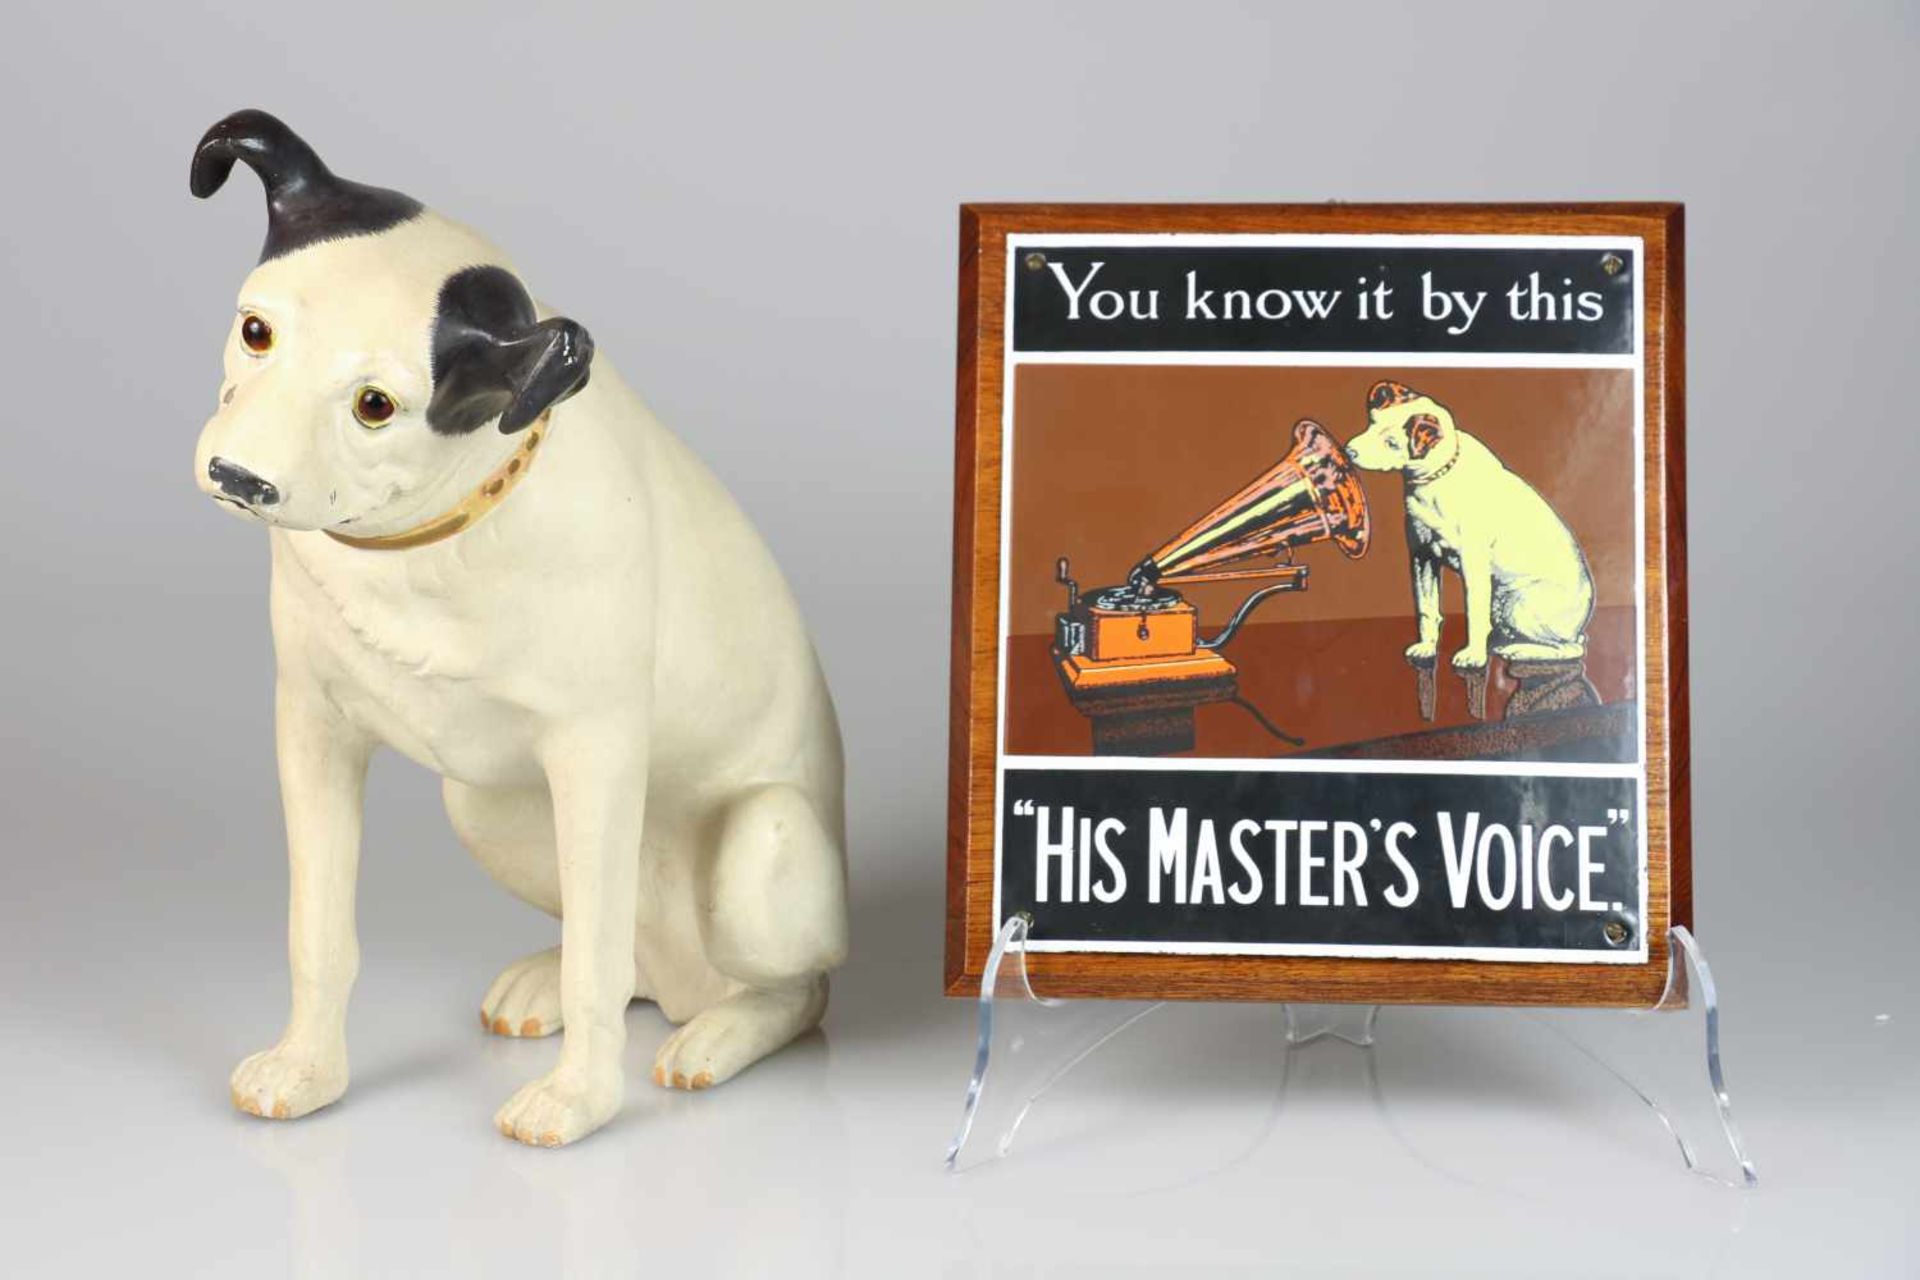 Een resin sculptuur van een hondje in de stijl van "His masters voice", en daarbij een emaille